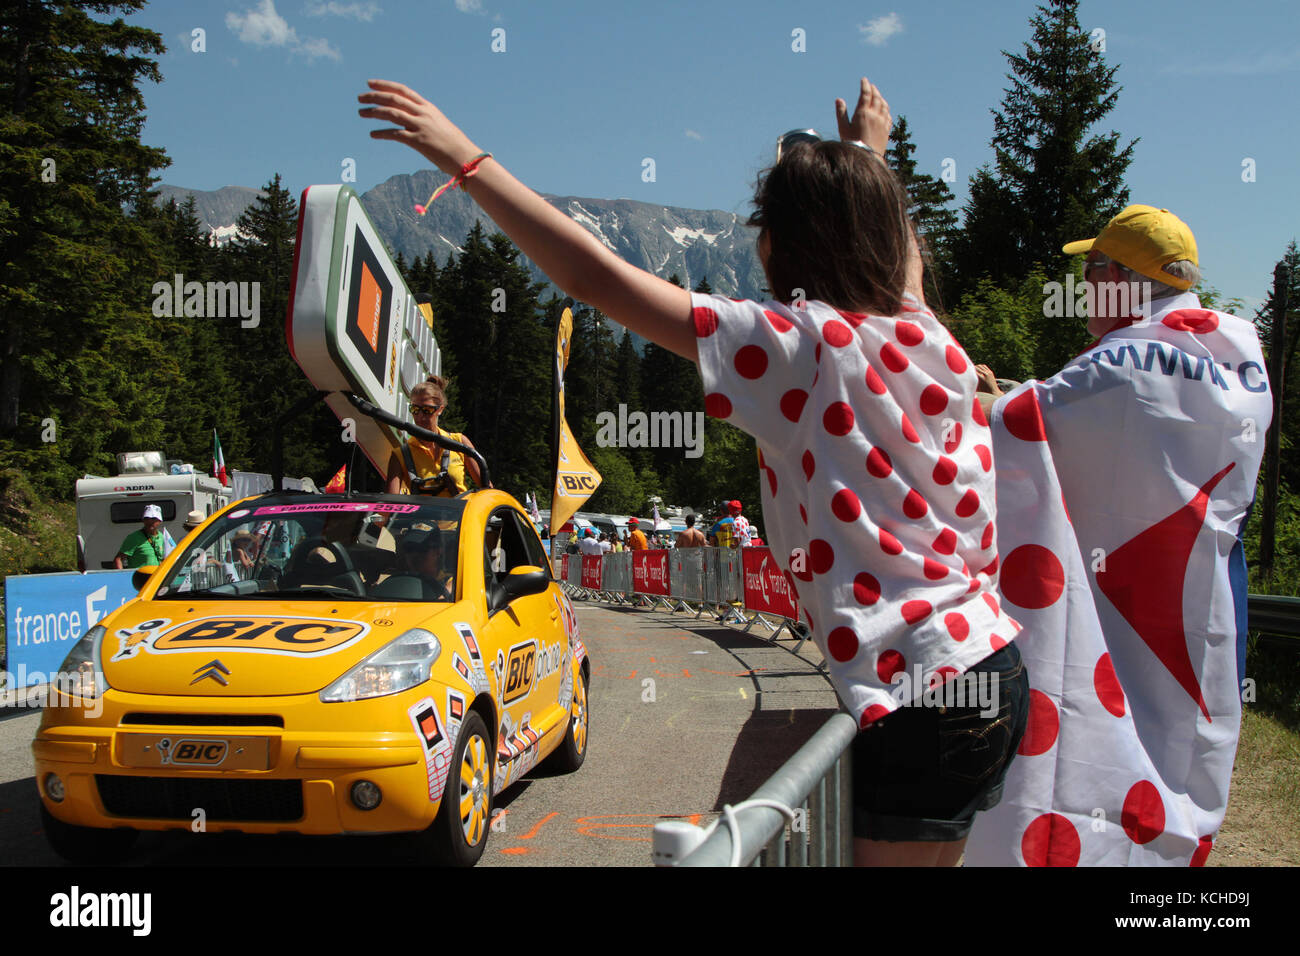 CHAMROUSSE, FRANCE, 18 JUILLET 2014 : caravane publicitaire du Tour de France.Un convoi de véhicules à caractère publicitaire, avant le passage de TH Banque D'Images